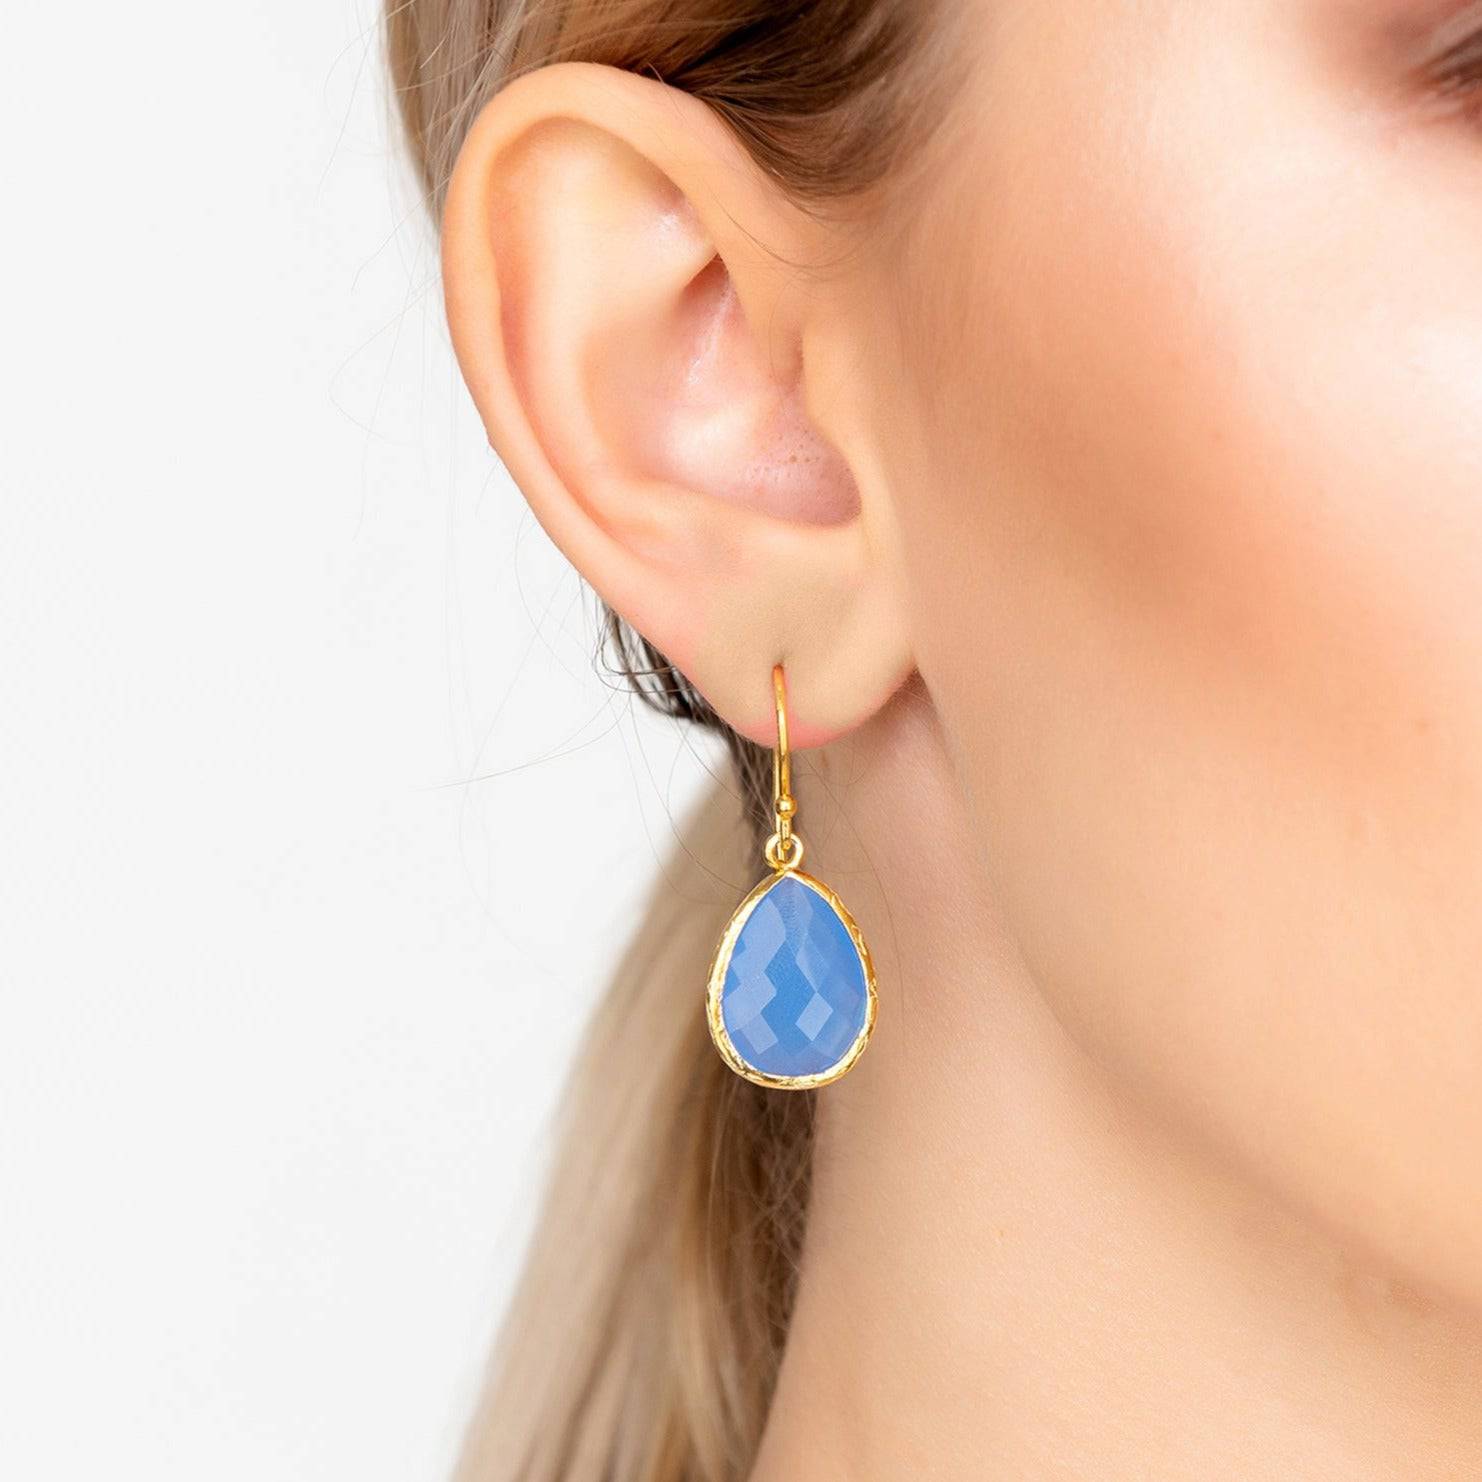 Petite Drop Earrings Dark Blue Chalcedony Gold - LATELITA Earrings